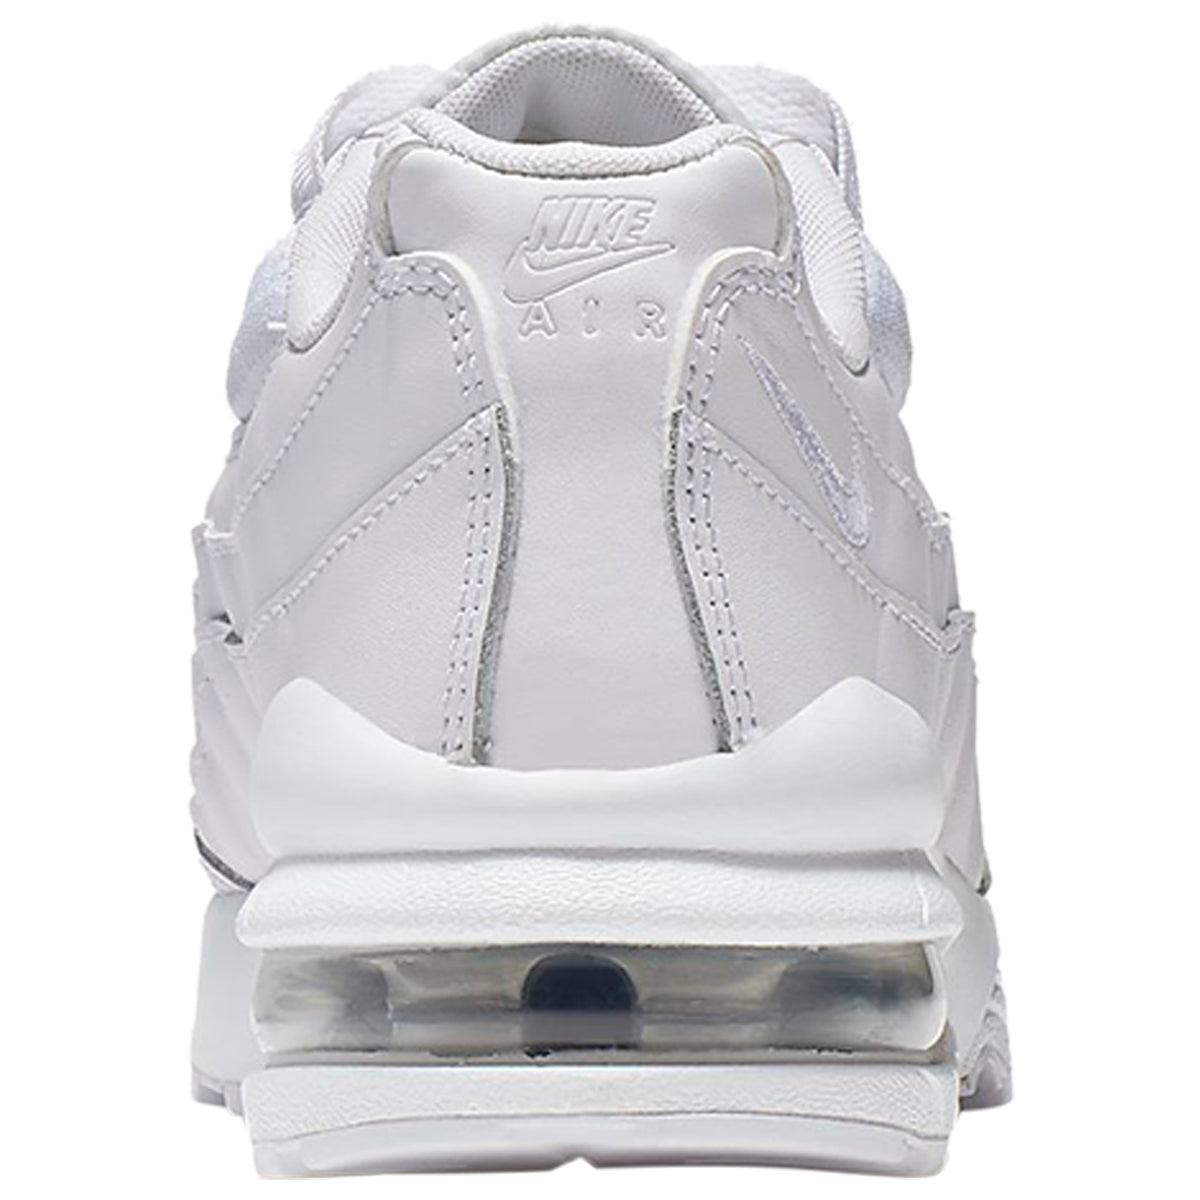 Nike Air Max 95 White Metallic Silver (GS)